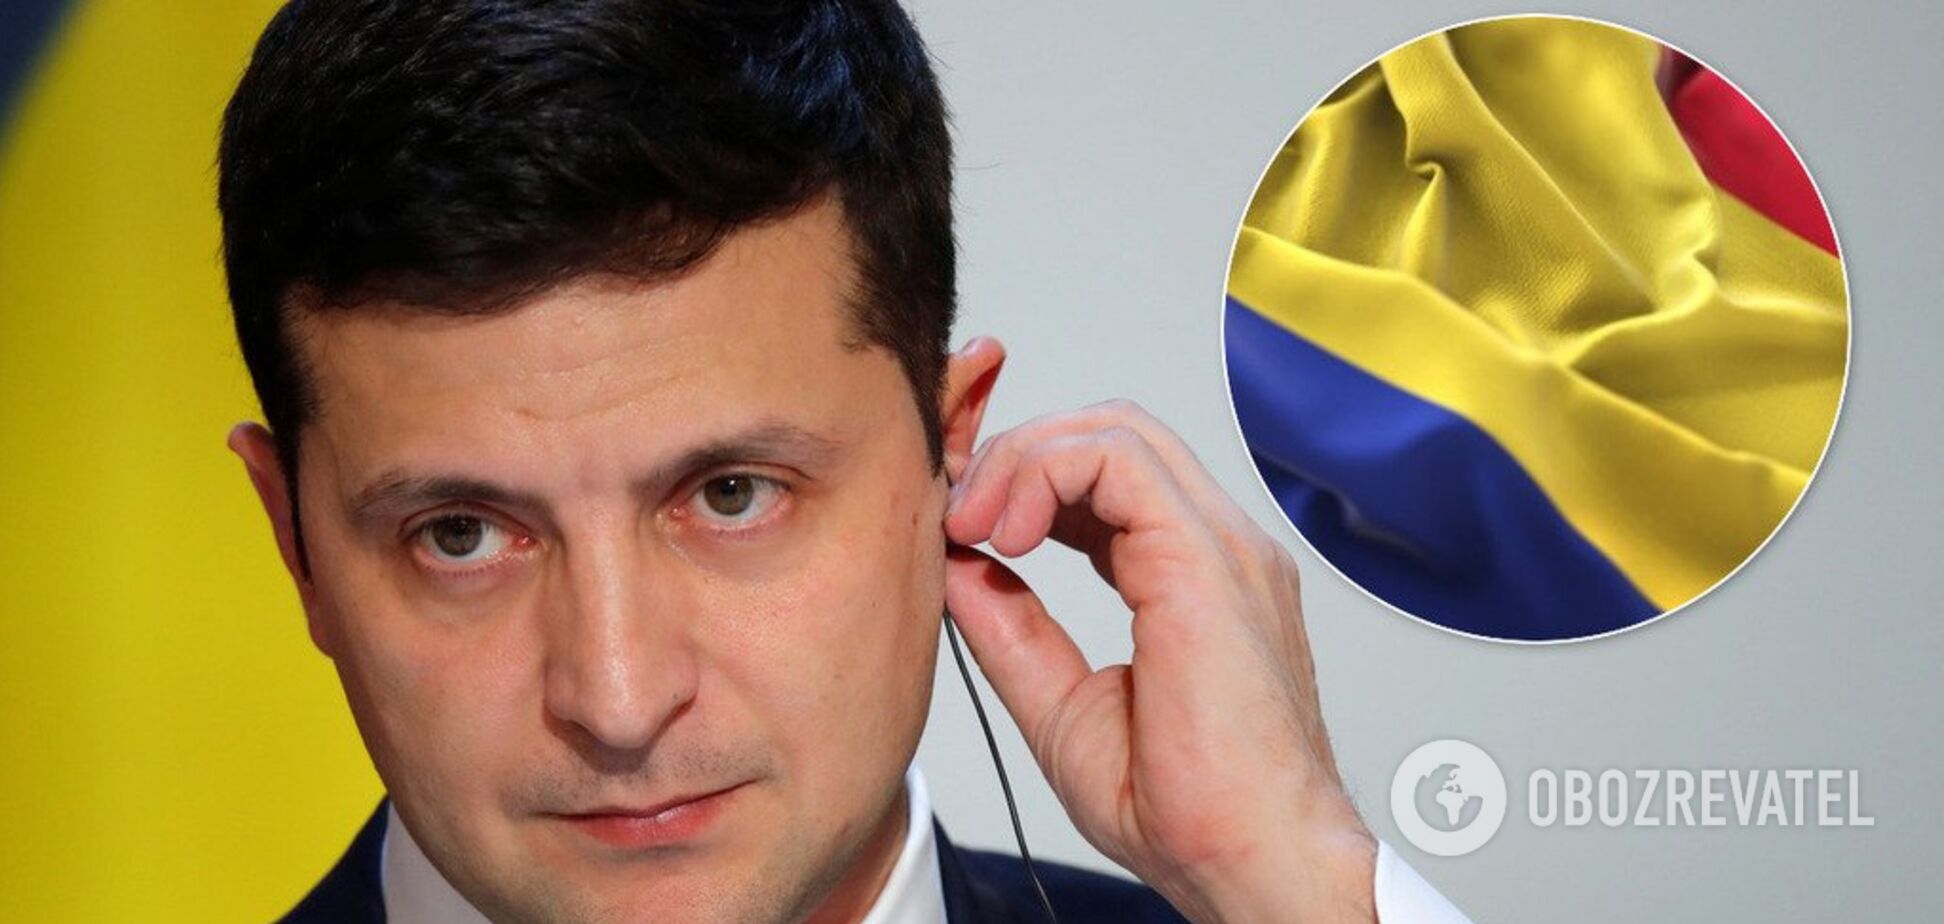 'Выглядит унизительно!' Украинцы возмутились из-за скандала с Румынией и речи Зеленского